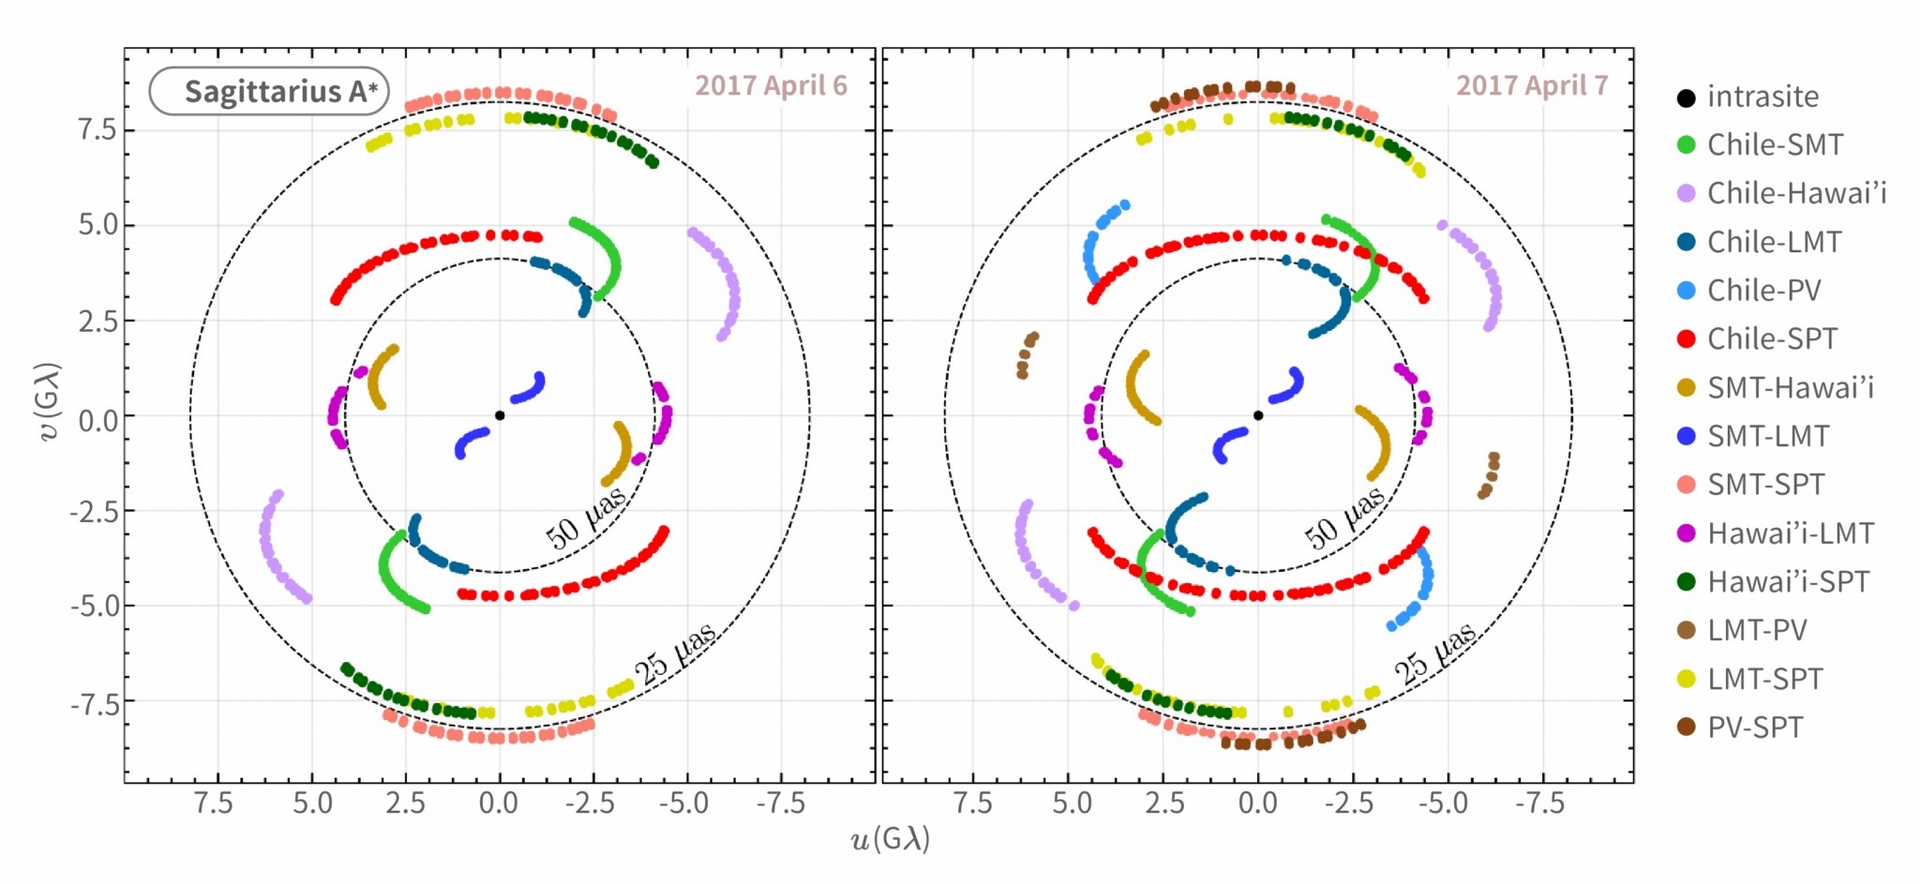 uv 平面是指電波天文影像經傅立葉轉換後的空間，上圖為銀河系中心黑洞影像的觀測結果。uv 平面上一個資料點，表示一條基線（望遠鏡兩兩一組的連線）所觀測到的數據。用不同顏色來表示不同望遠鏡組別的基線，並且隨著地球自轉，各條基線在 uv 平面上的覆蓋範圍也越多。天文學家需要有足夠的 uv 覆蓋範圍，才能妥善地還原天體的影像。 圖｜事件視界望遠鏡合作團隊 